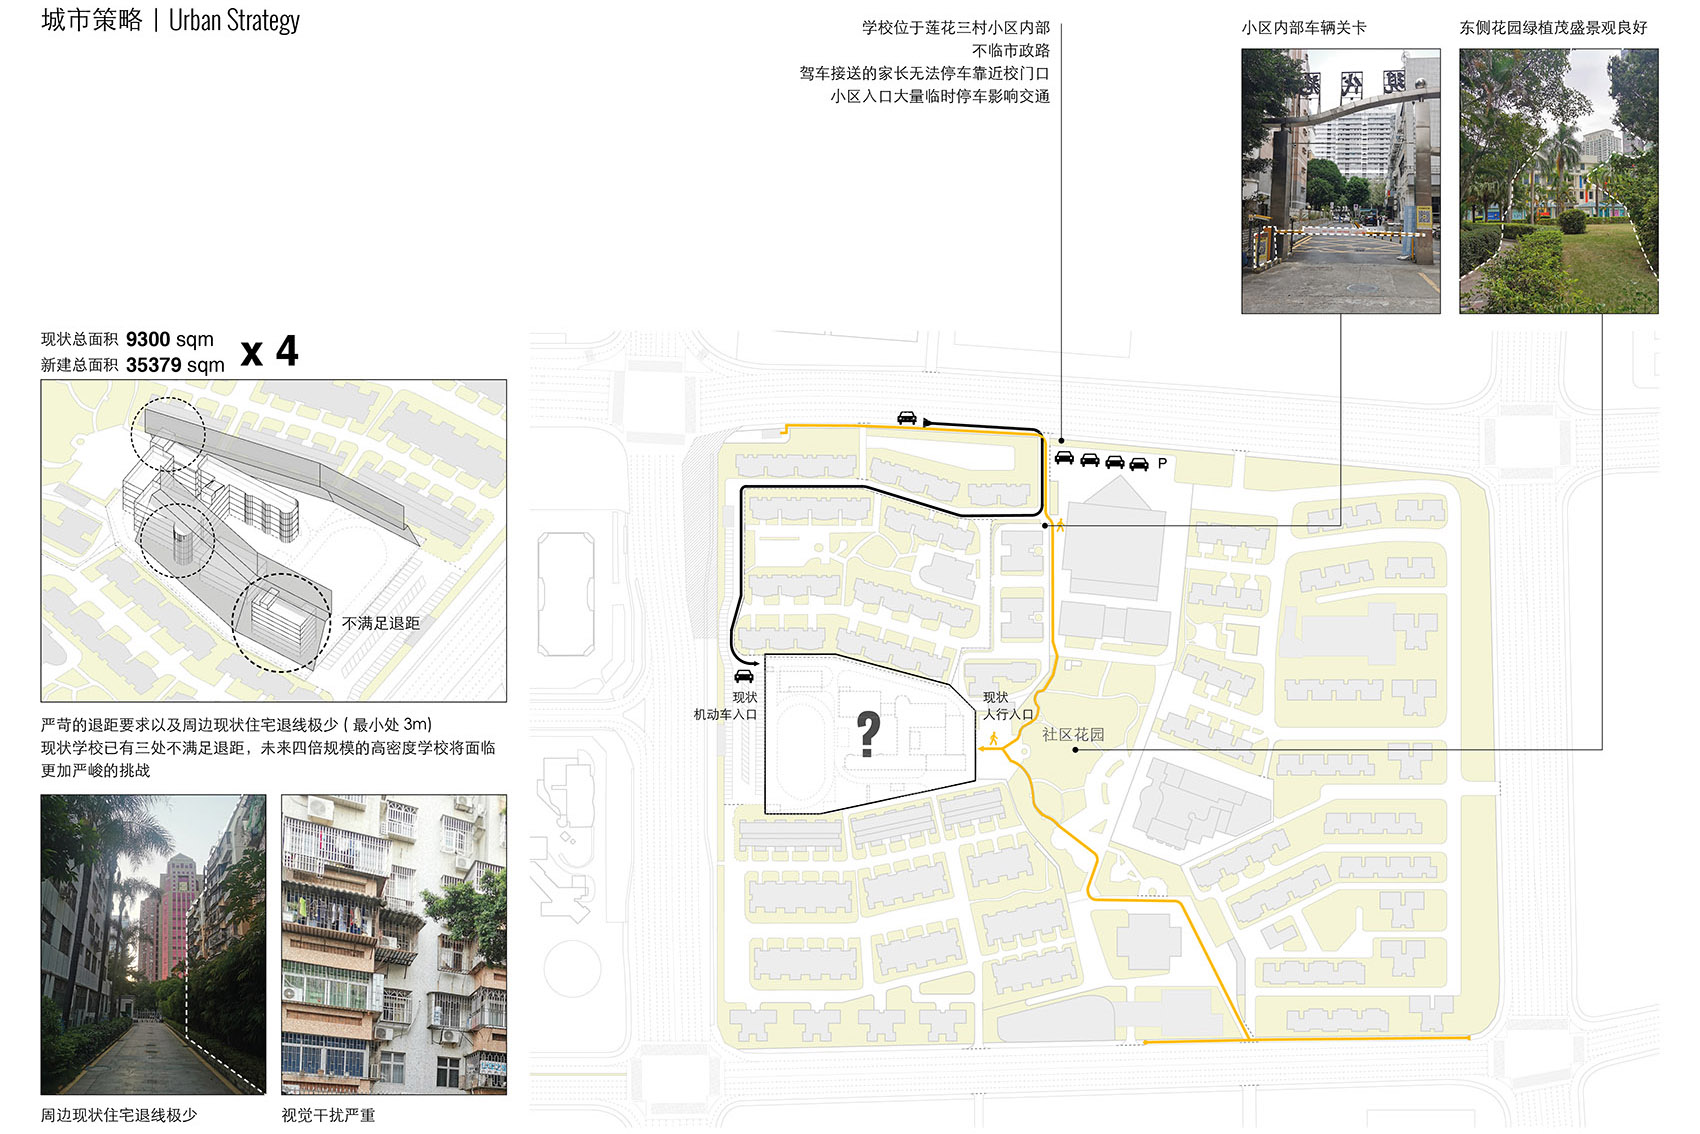 重叠校园：莲花小学校园设计，深圳/高密度垂直分区式校园-9